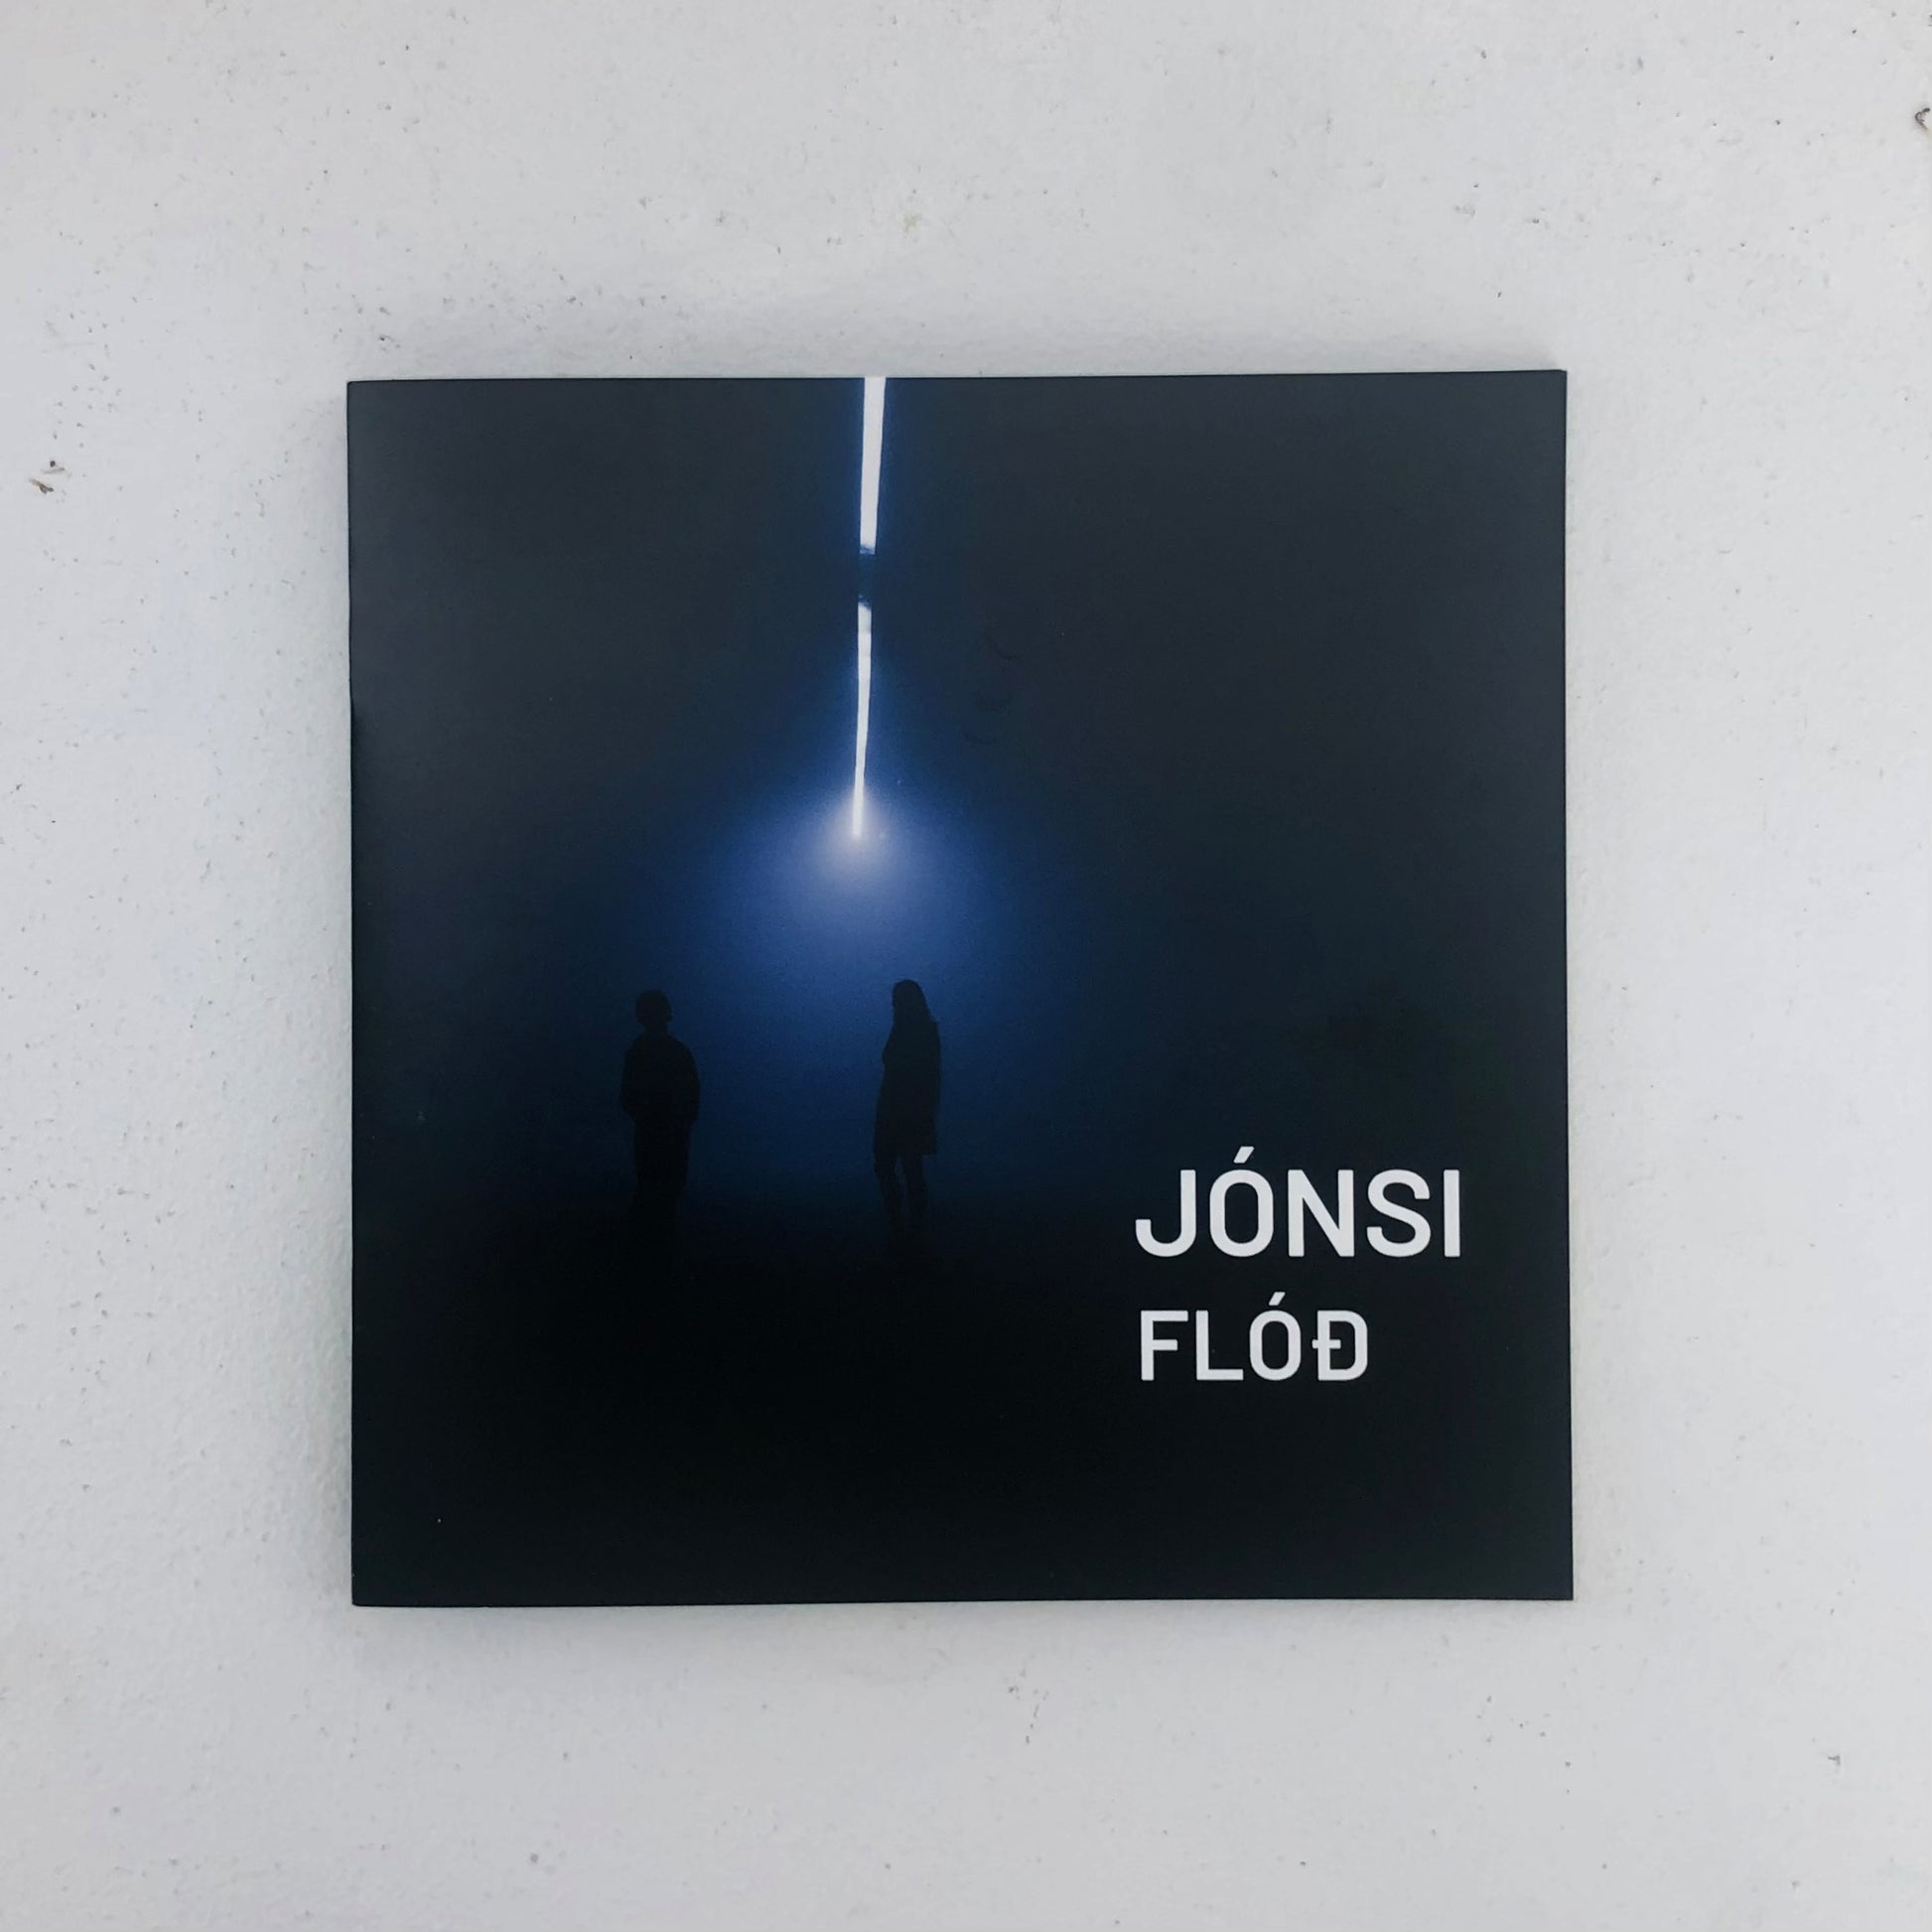  exhibition FLÓÐ (Flood) by Jónsi (Jón Þór Birgisson), lead singer of the world-famous Icelandic post-rock band Sigur Rós. Created specifically for the Museum